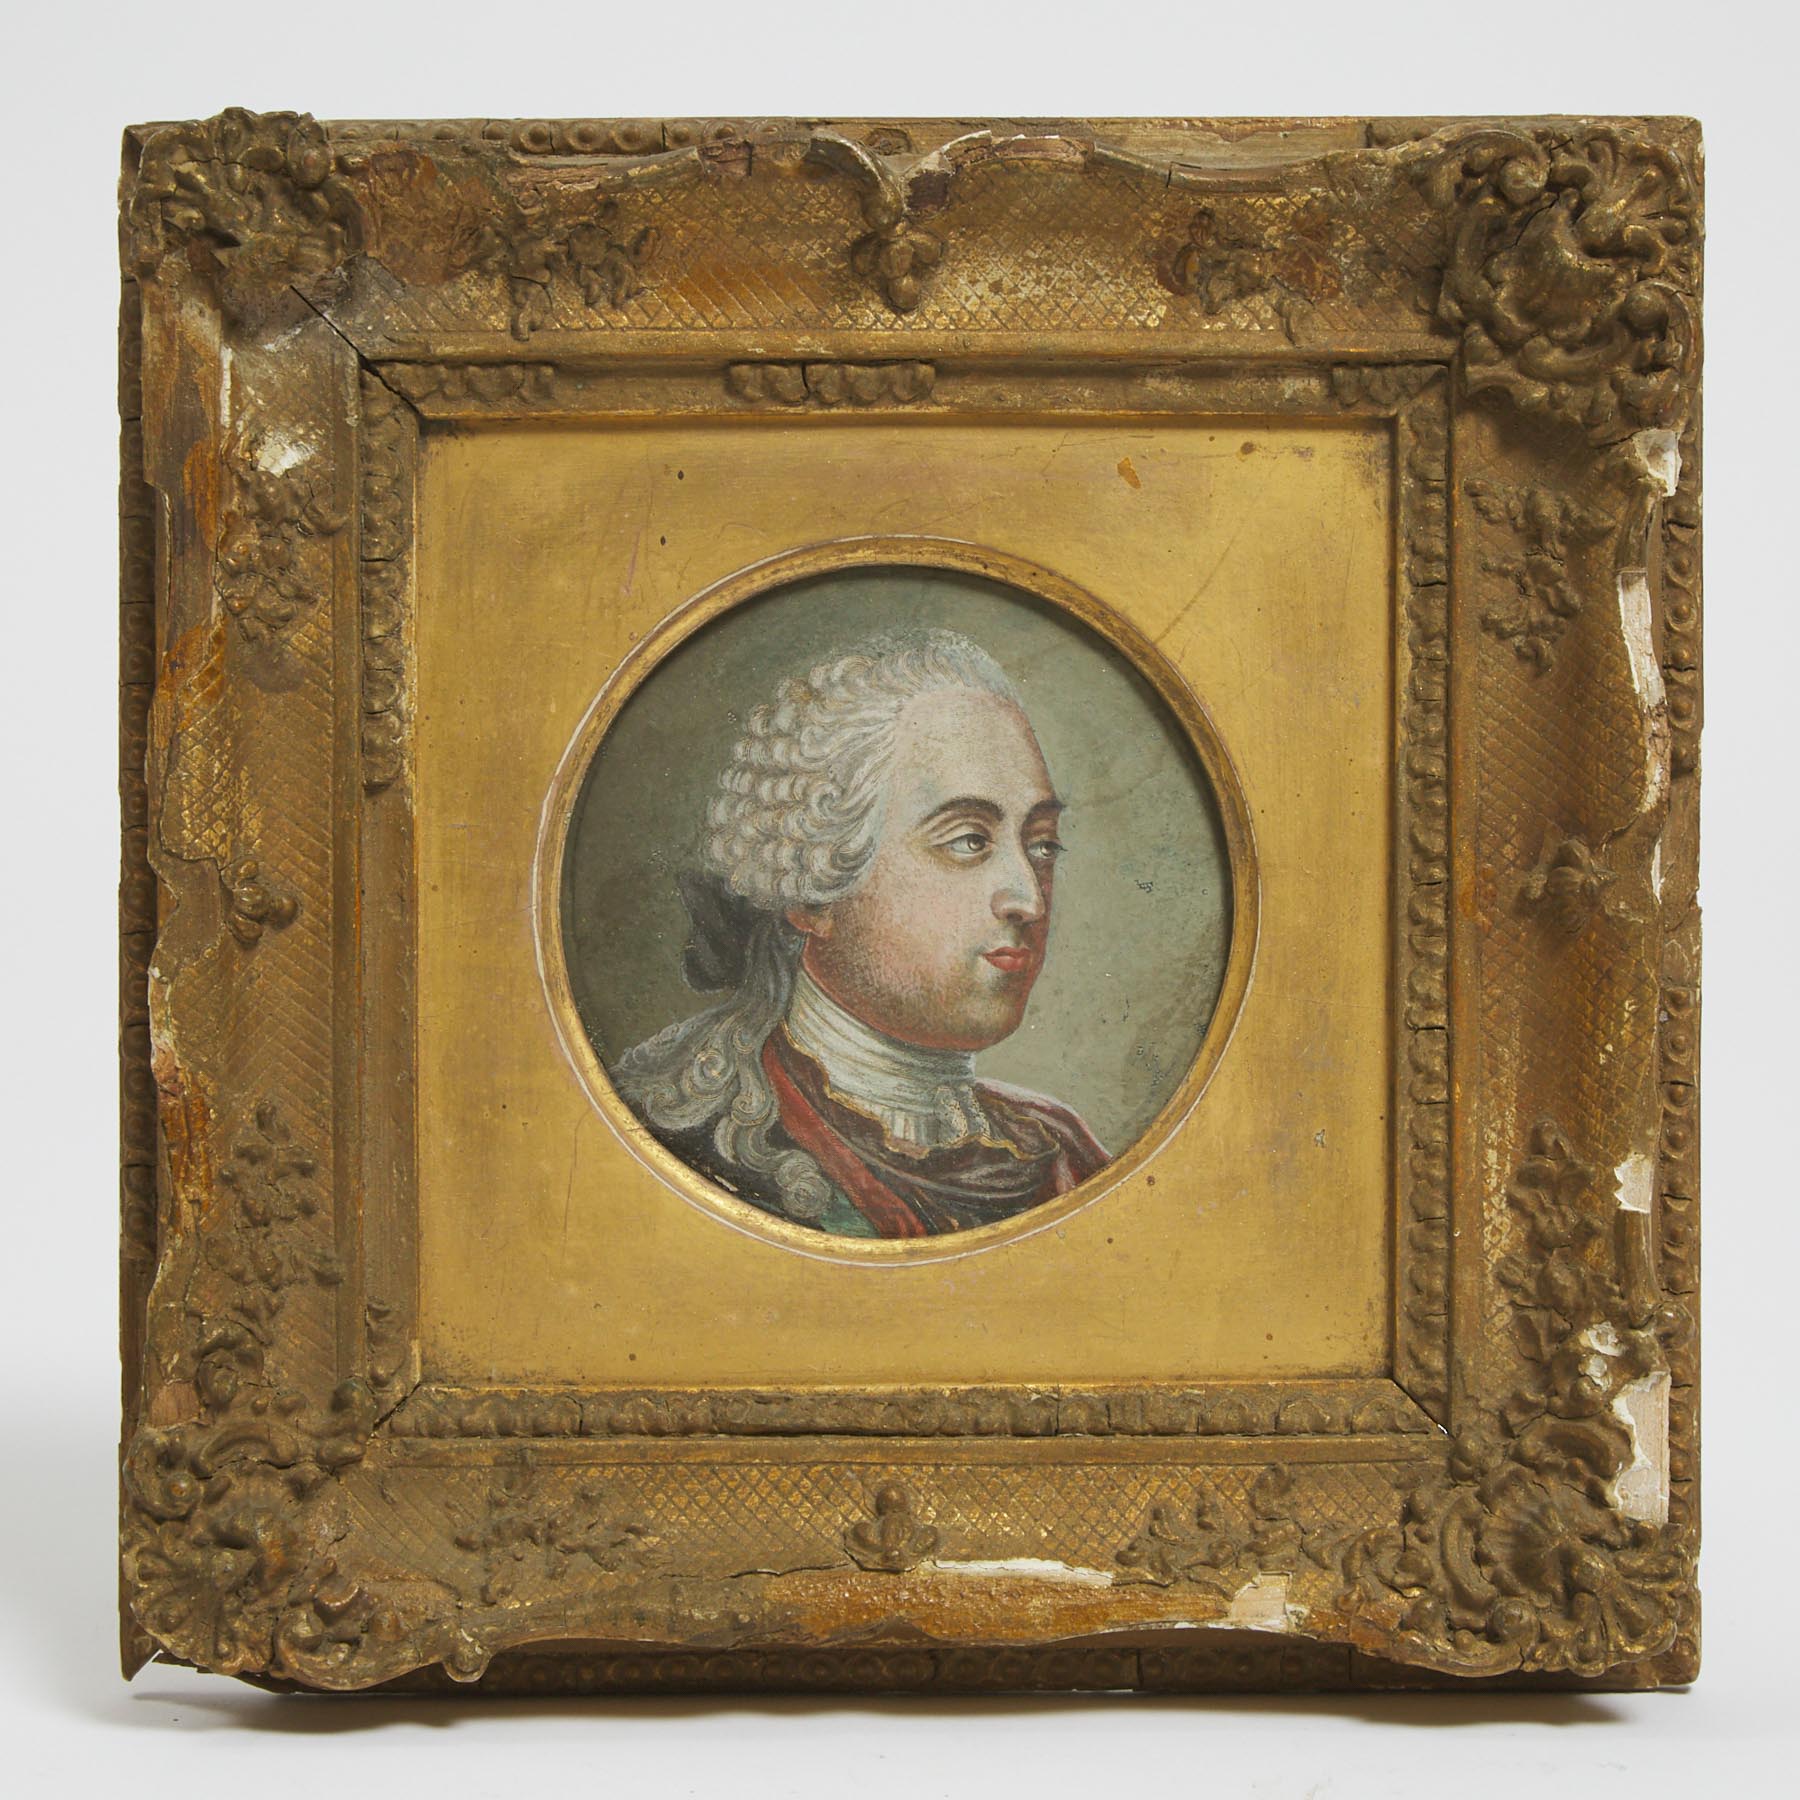 Gilles Jacques Petit after Jean Etienne Liotard (Swiss, 1702-1789)